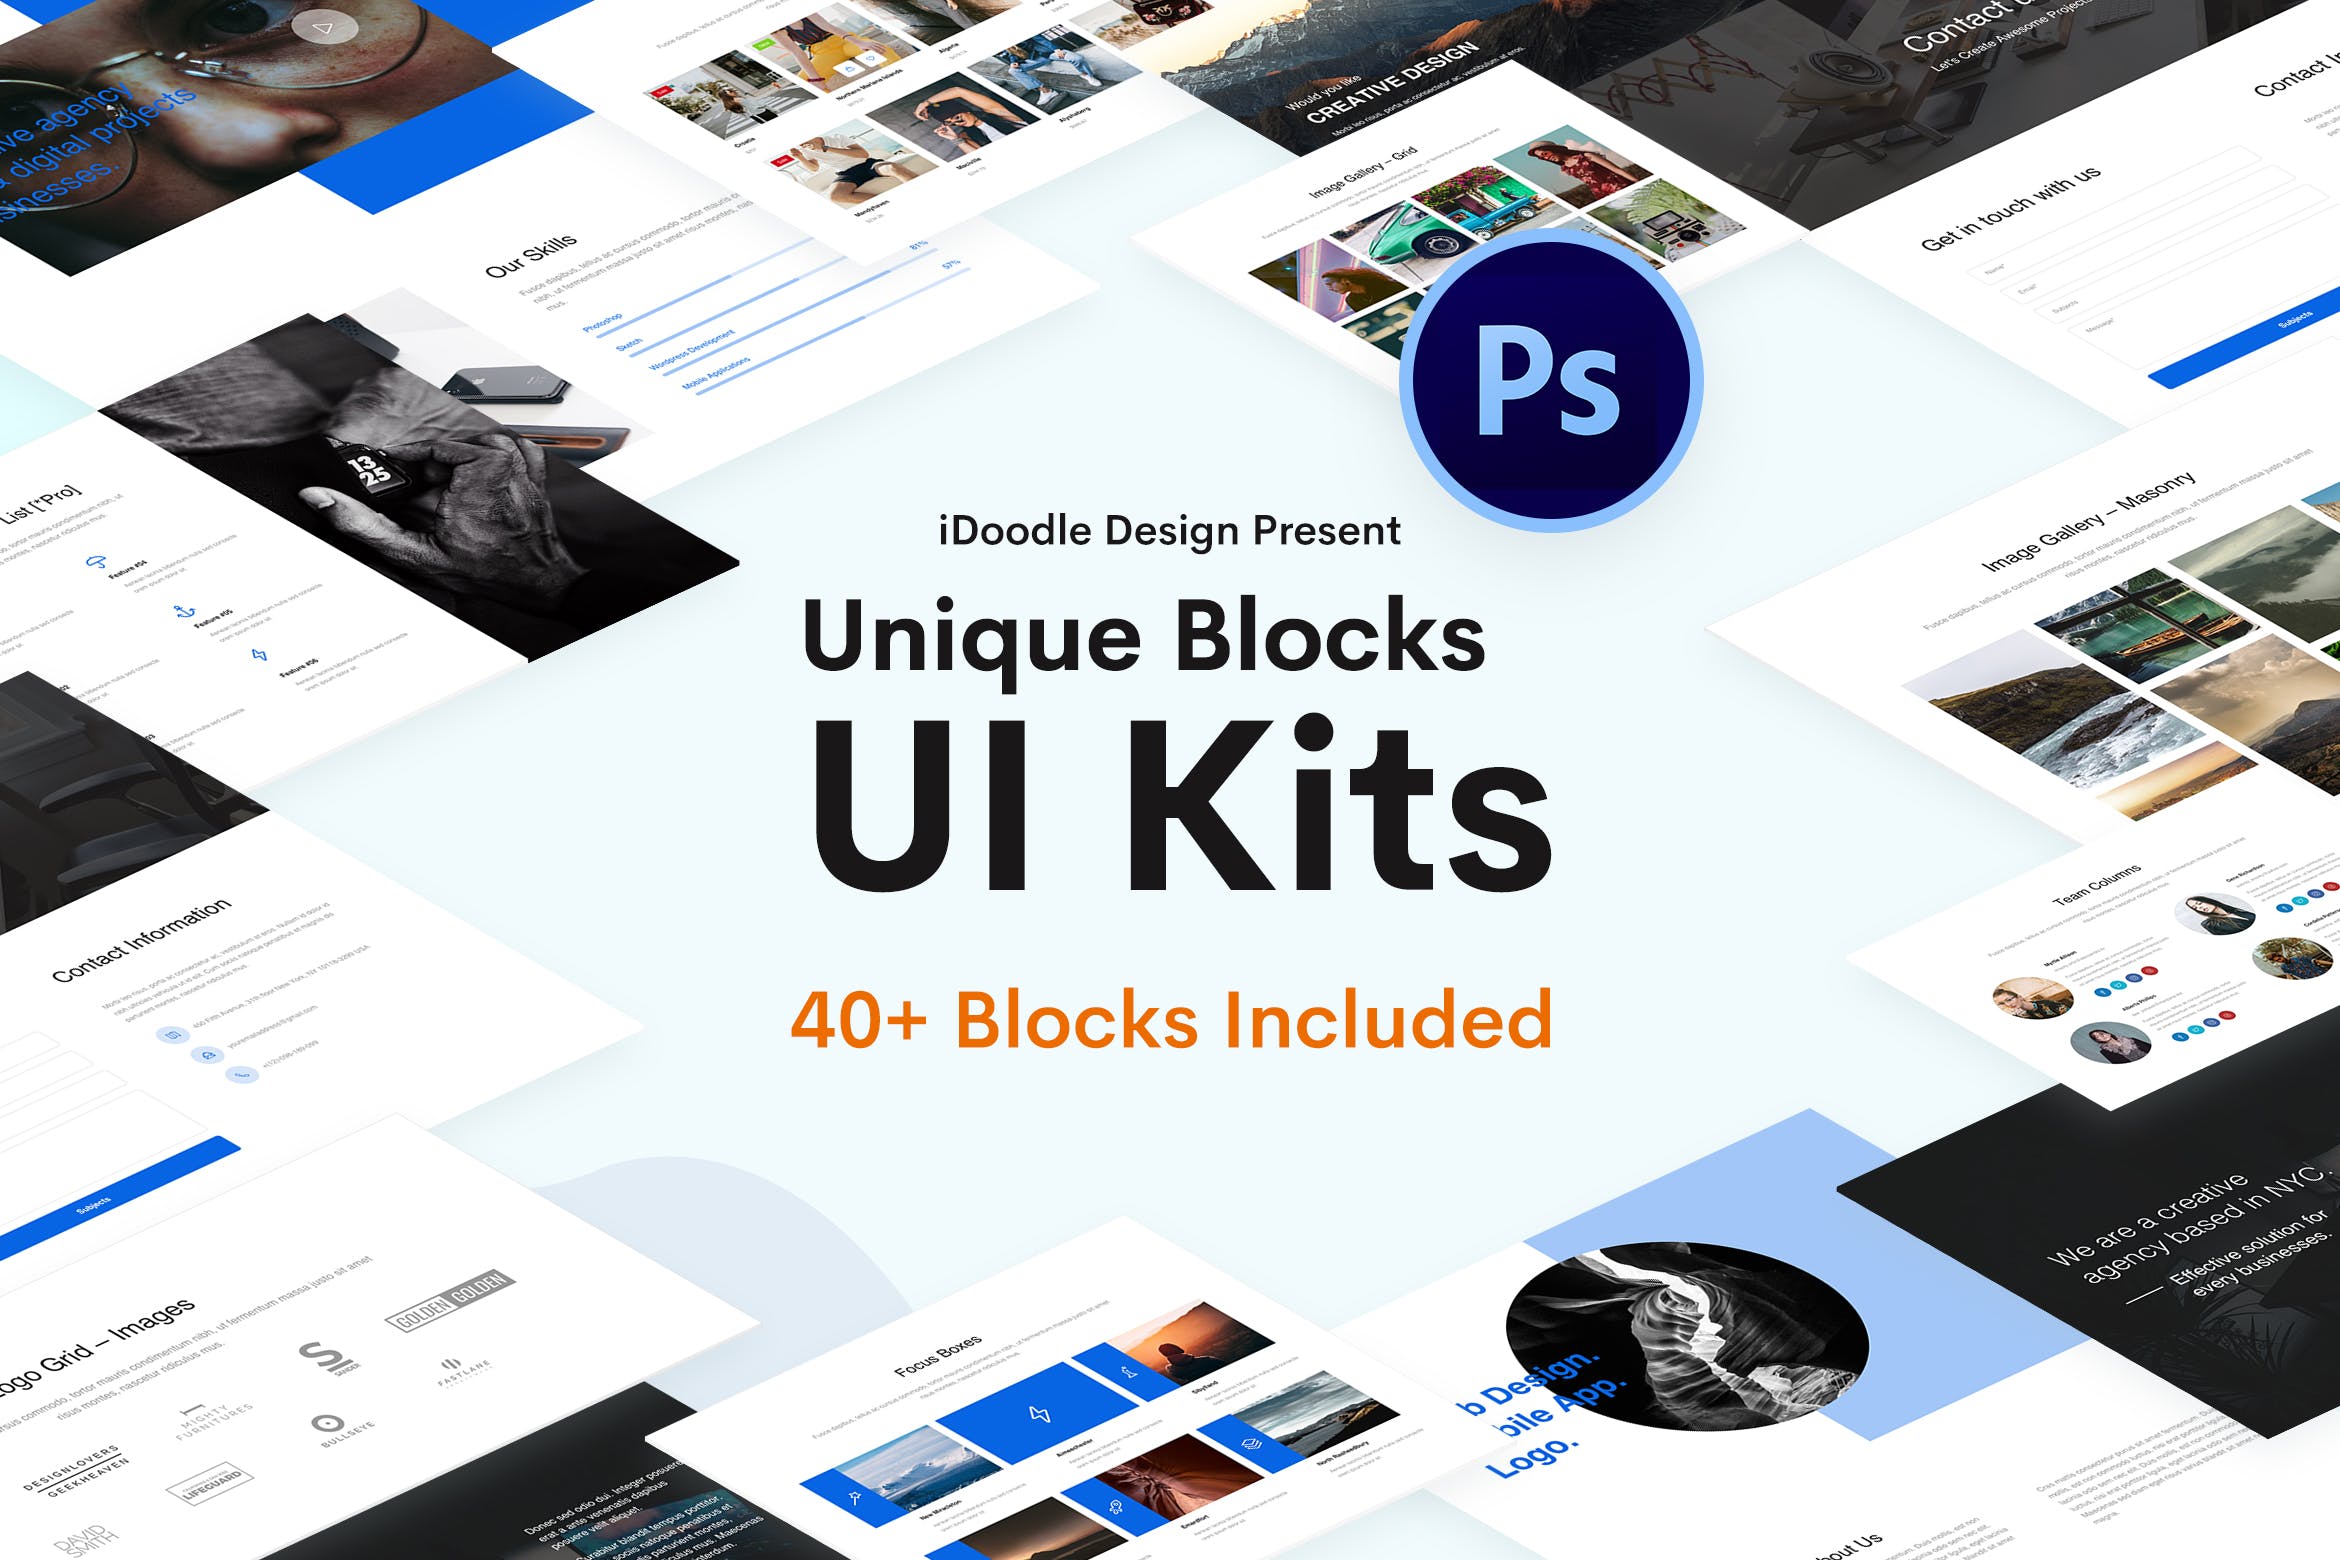 创意网站功能区块/版块UI设计PSD模板 Blocks Creative UI Kits PSD Template插图